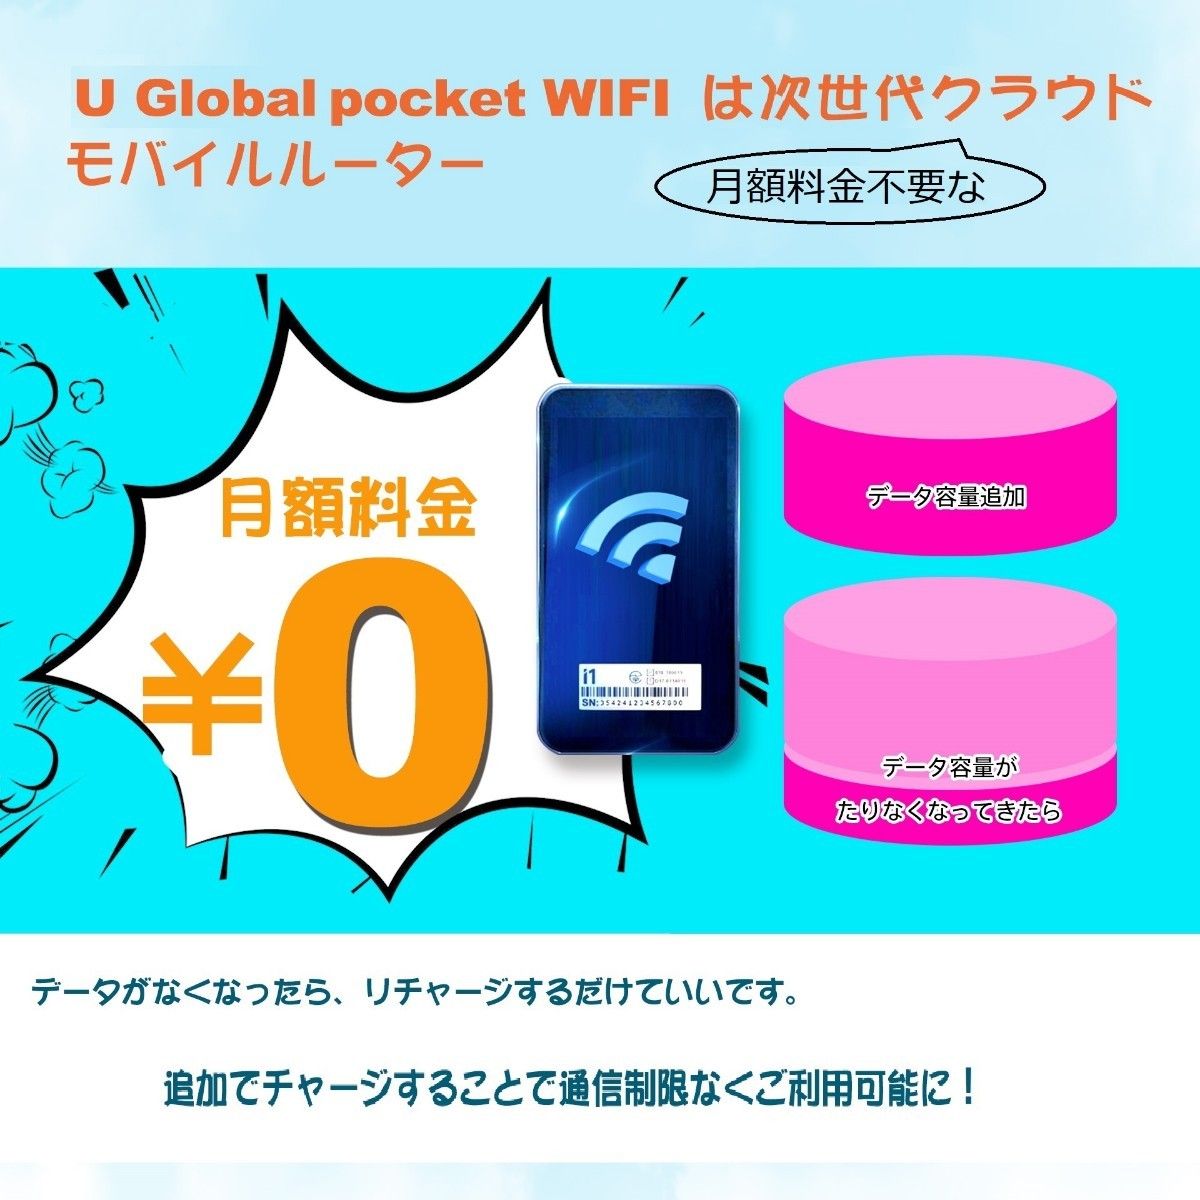 リチャージWiFi】 モバイルWiFi ルーター/日本・海外兼用wifi/データ